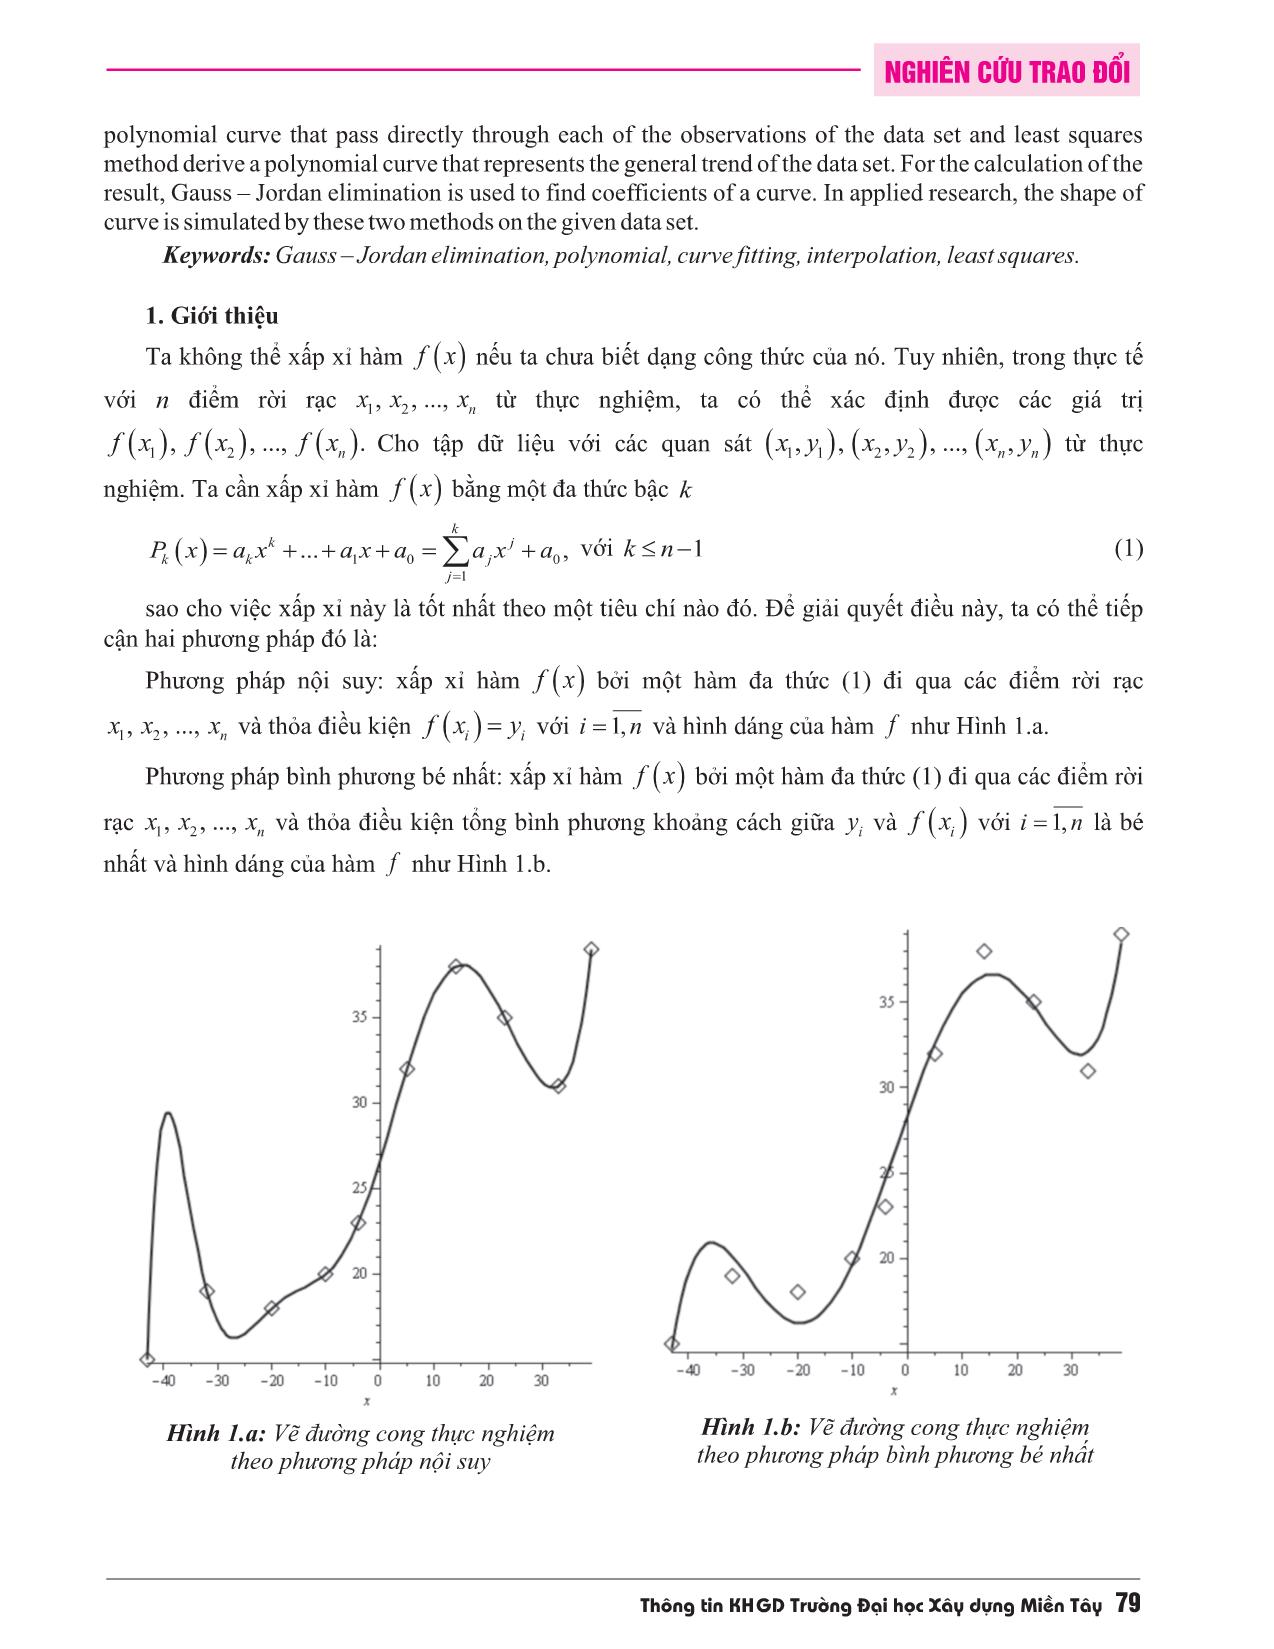 Khử Gauss-Jordan với vẽ đường cong thực nghiệm đa thức trang 2